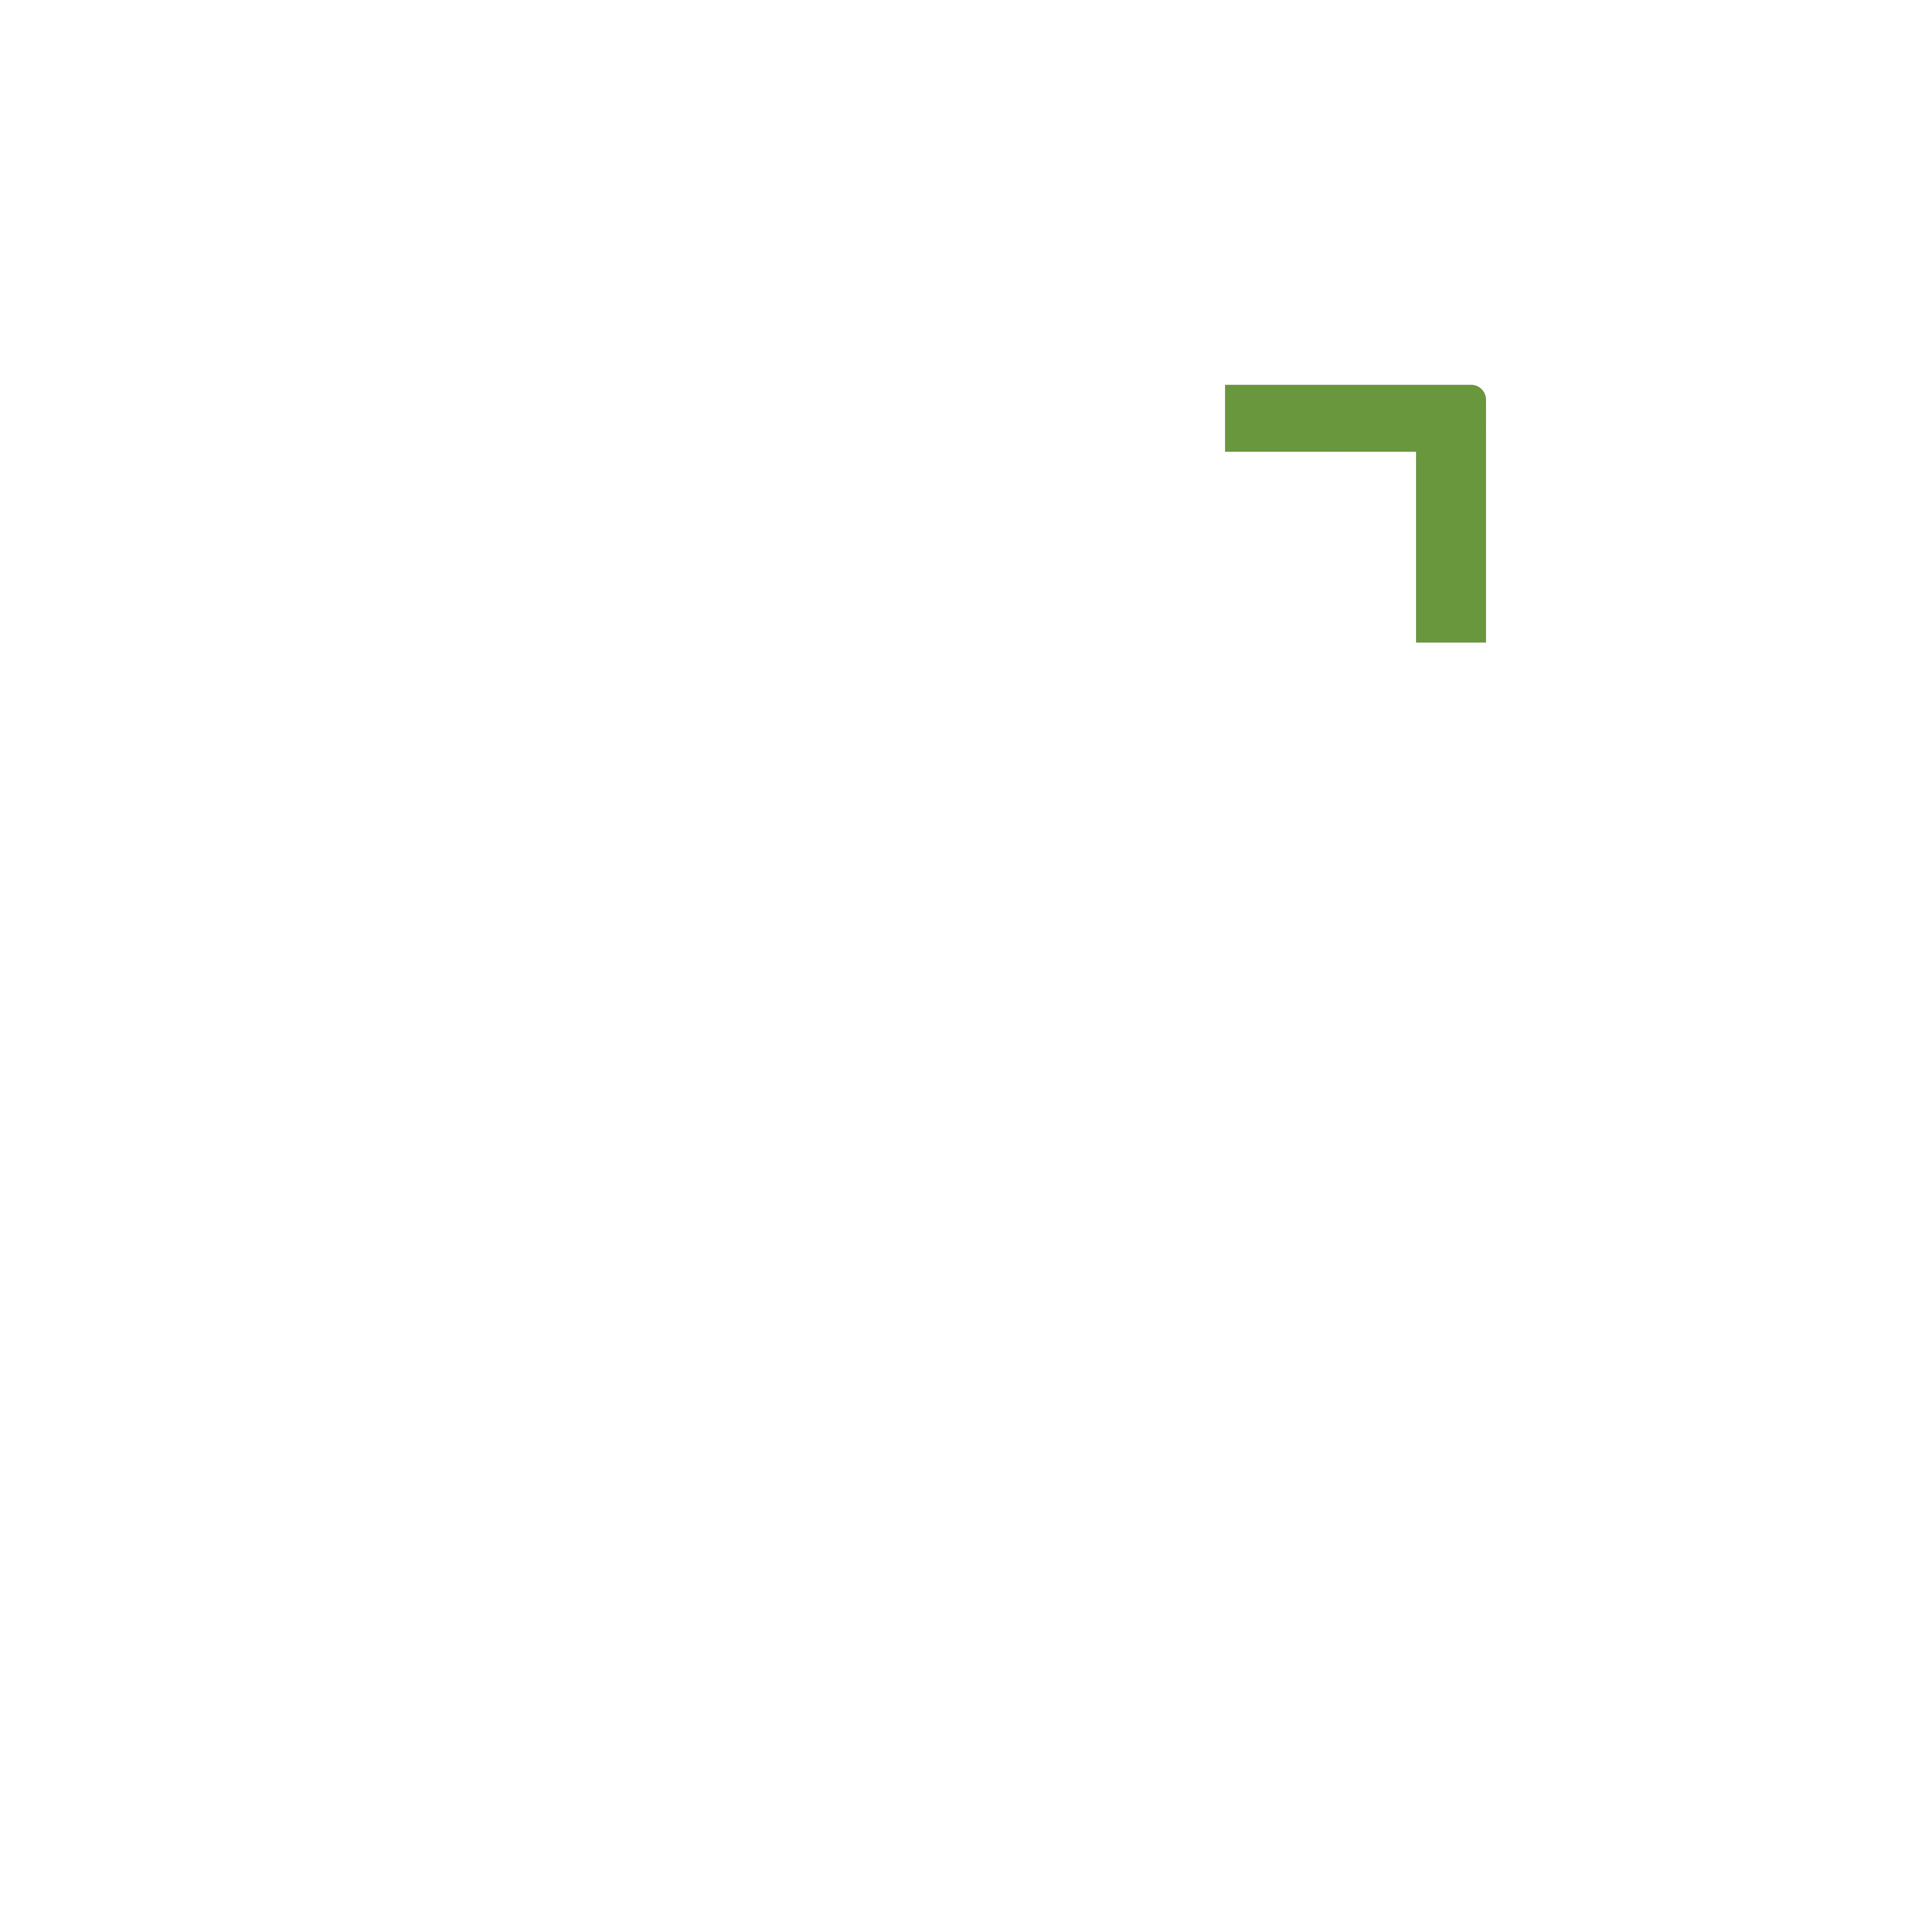 ARENA CLUB